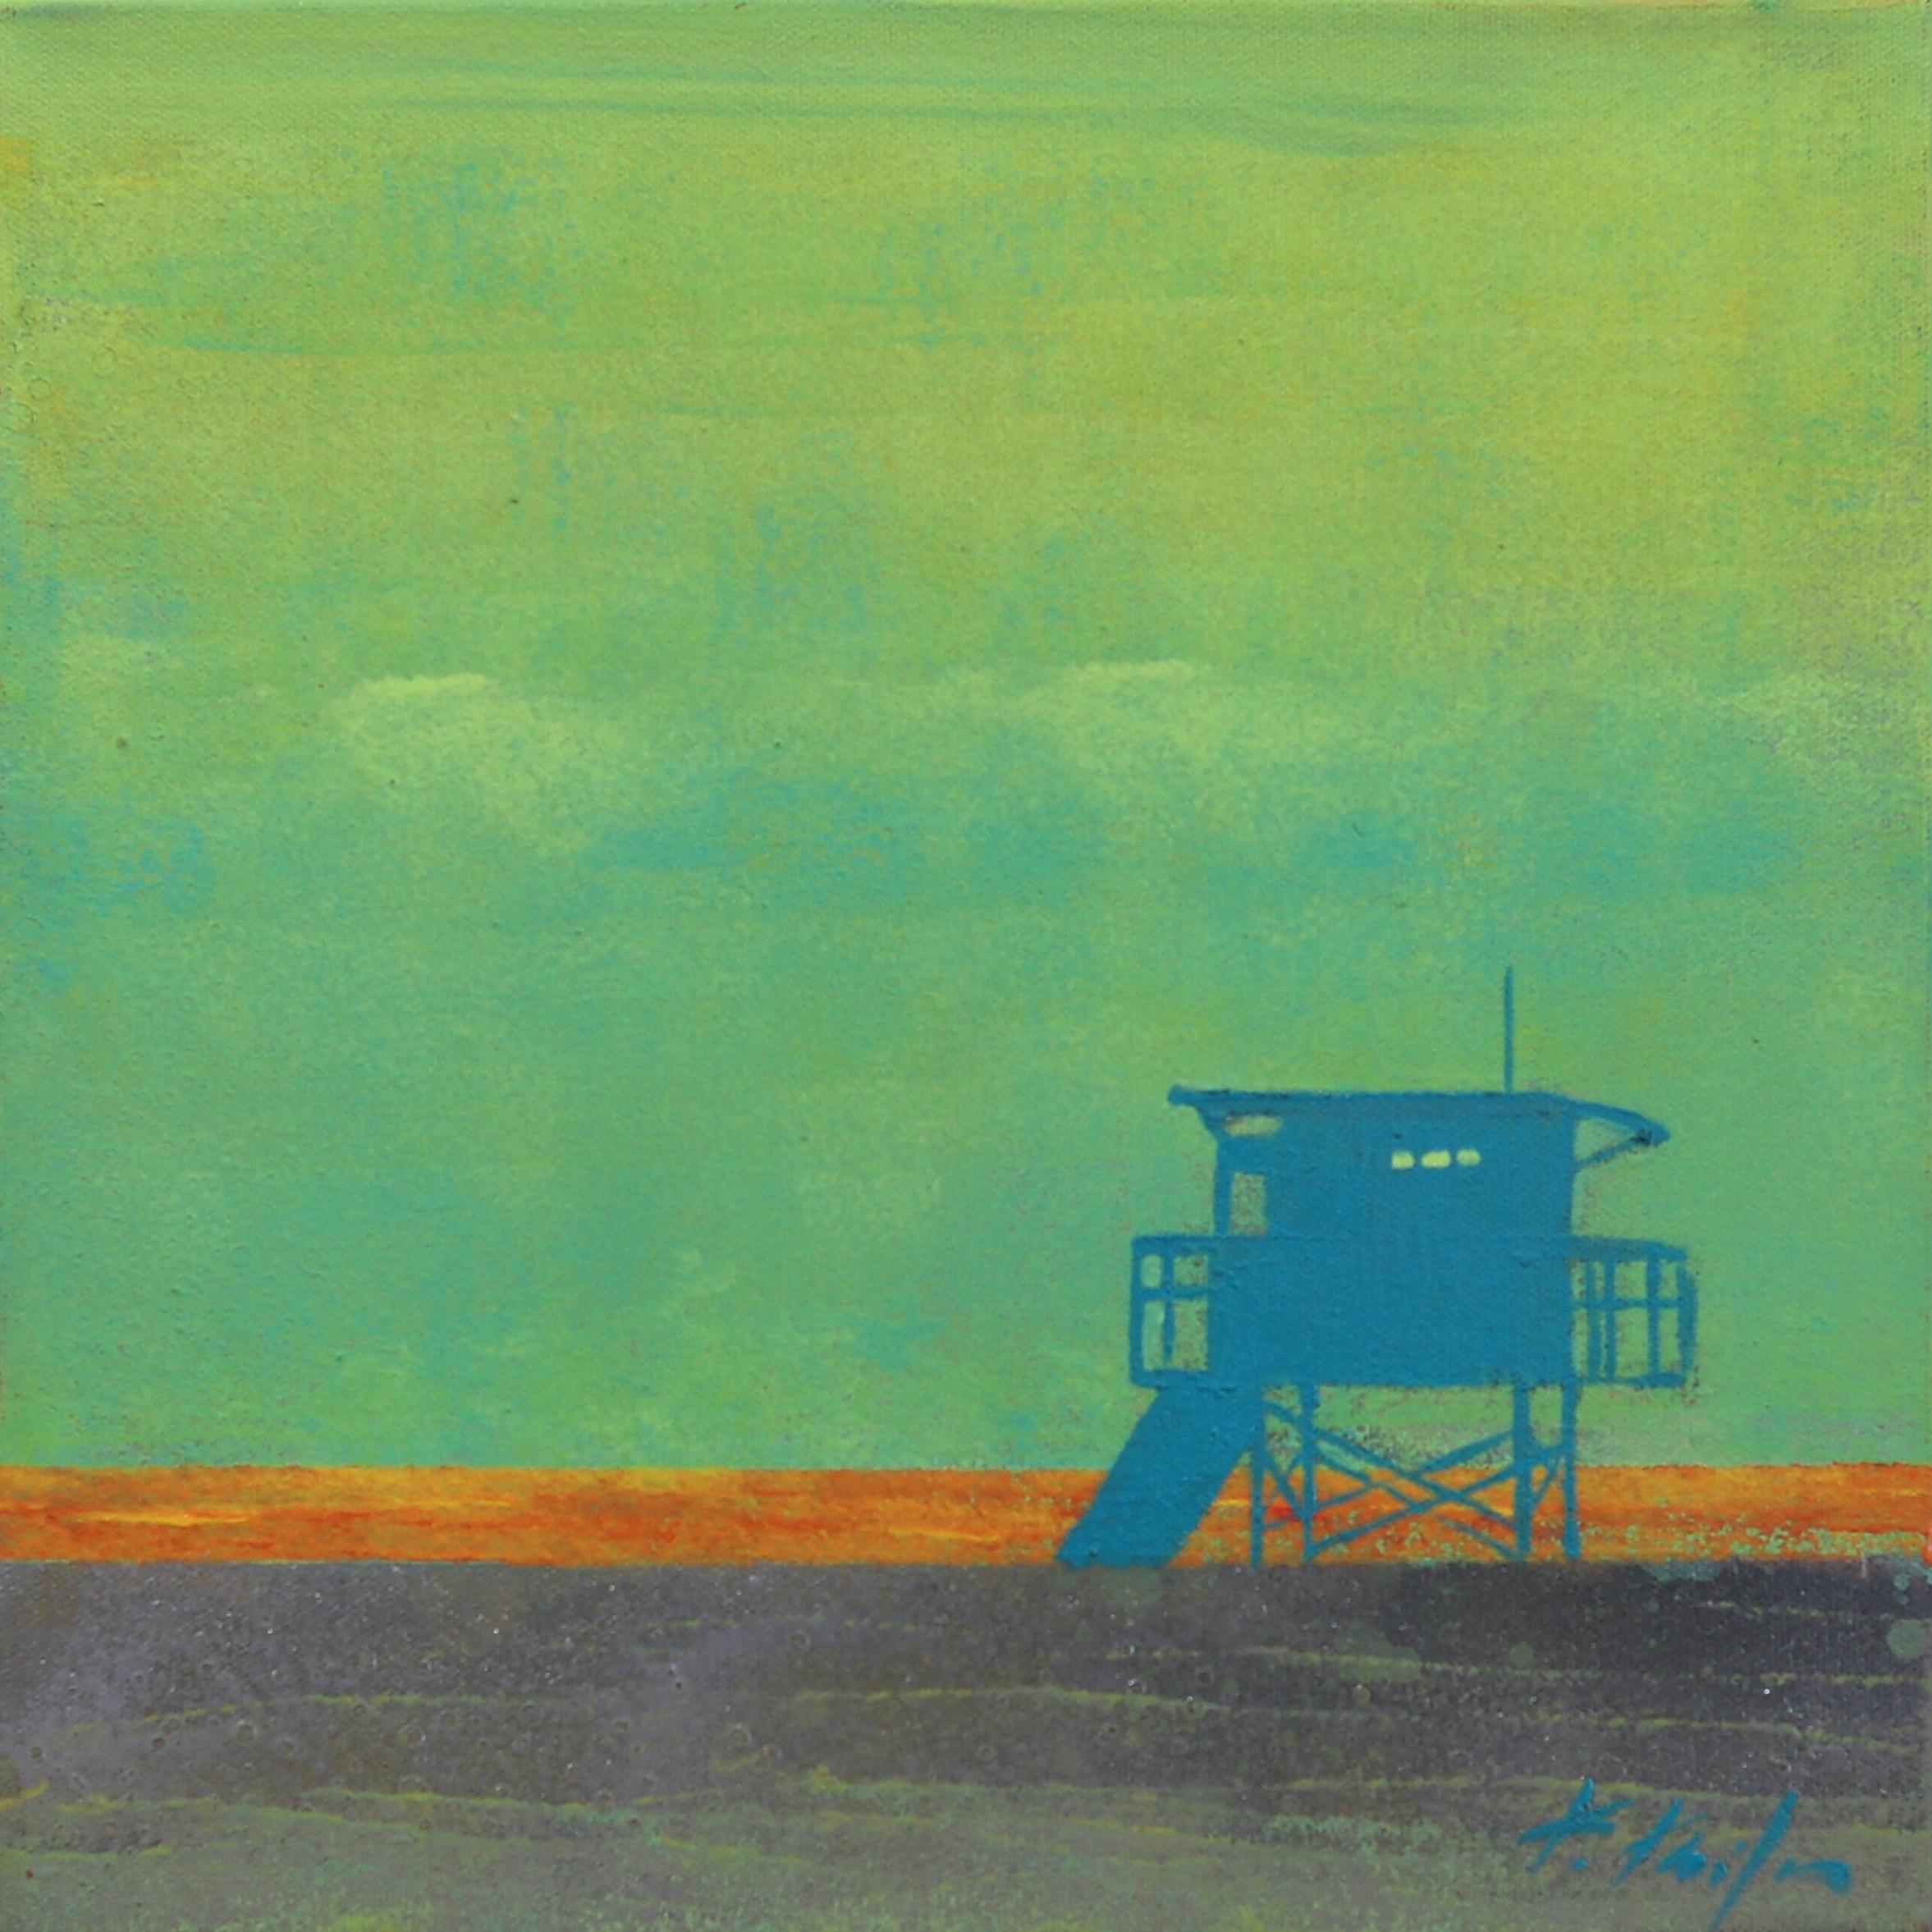 Kathleen Keifer Abstract Painting - Summer Haze - Lifeguard Stand on Beach Original Pop Art Oceanscape Sky Painting